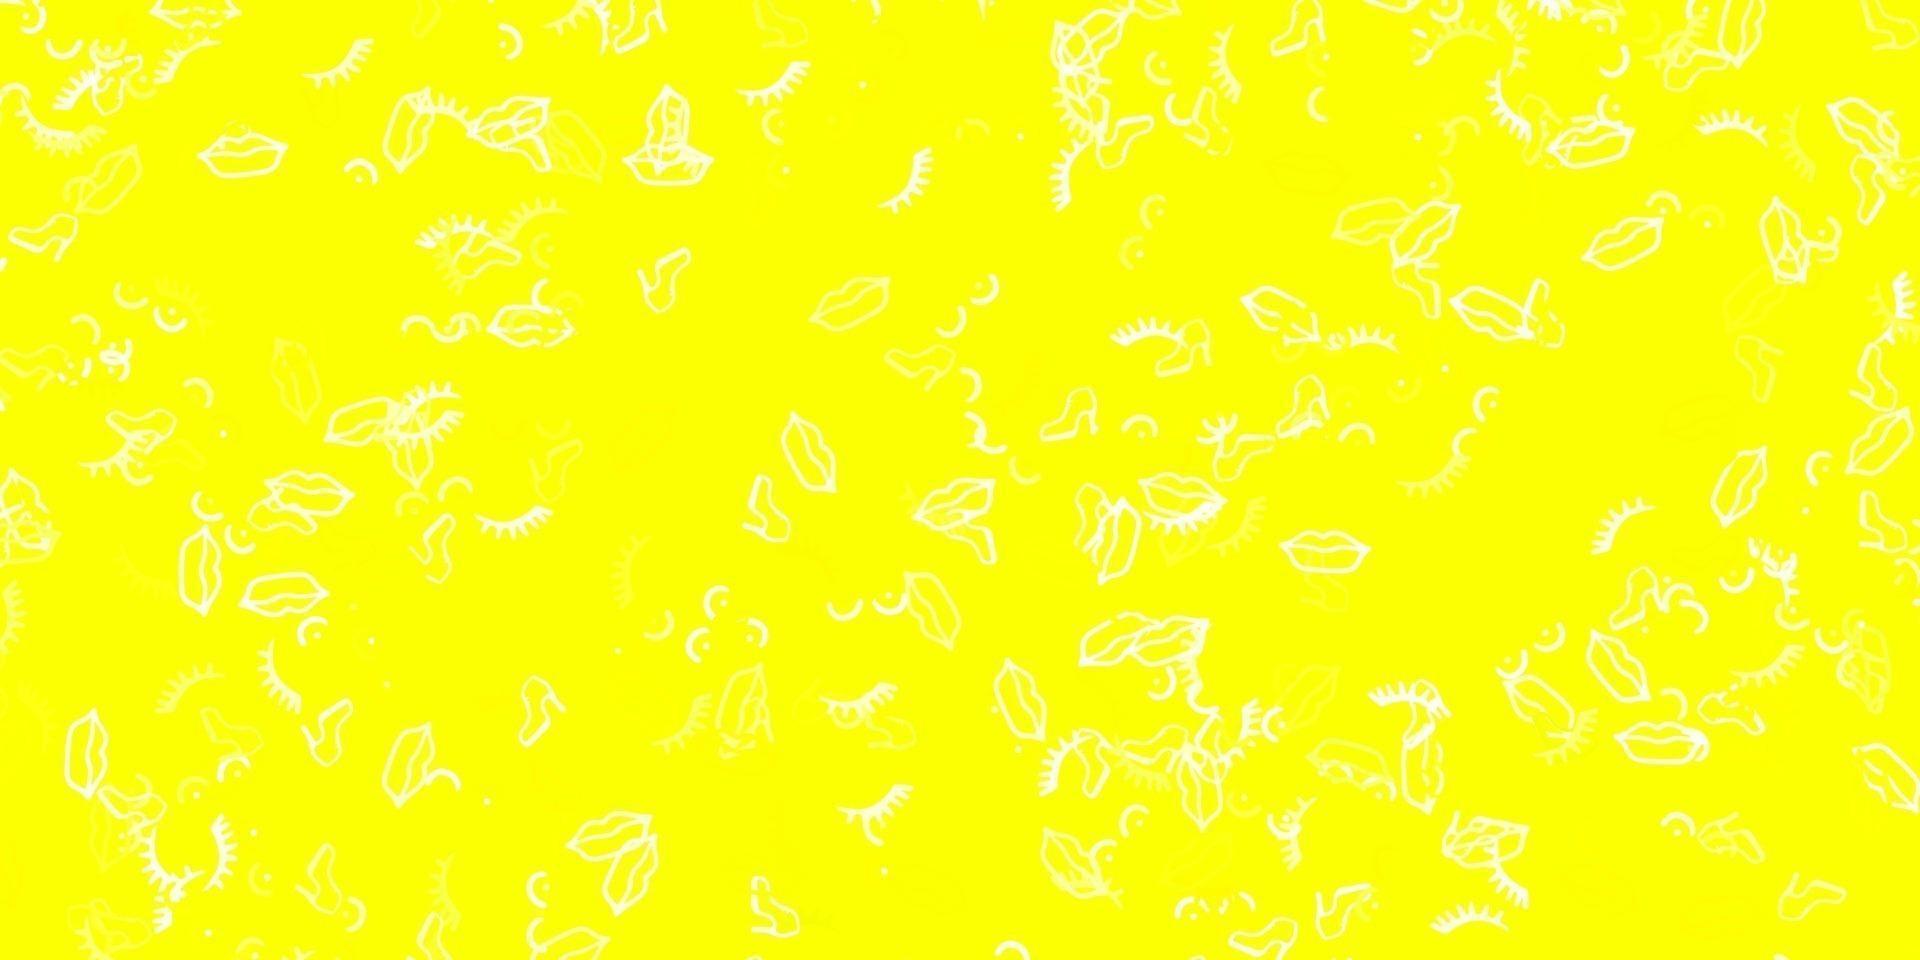 Fondo de vector amarillo claro con símbolos de mujer.